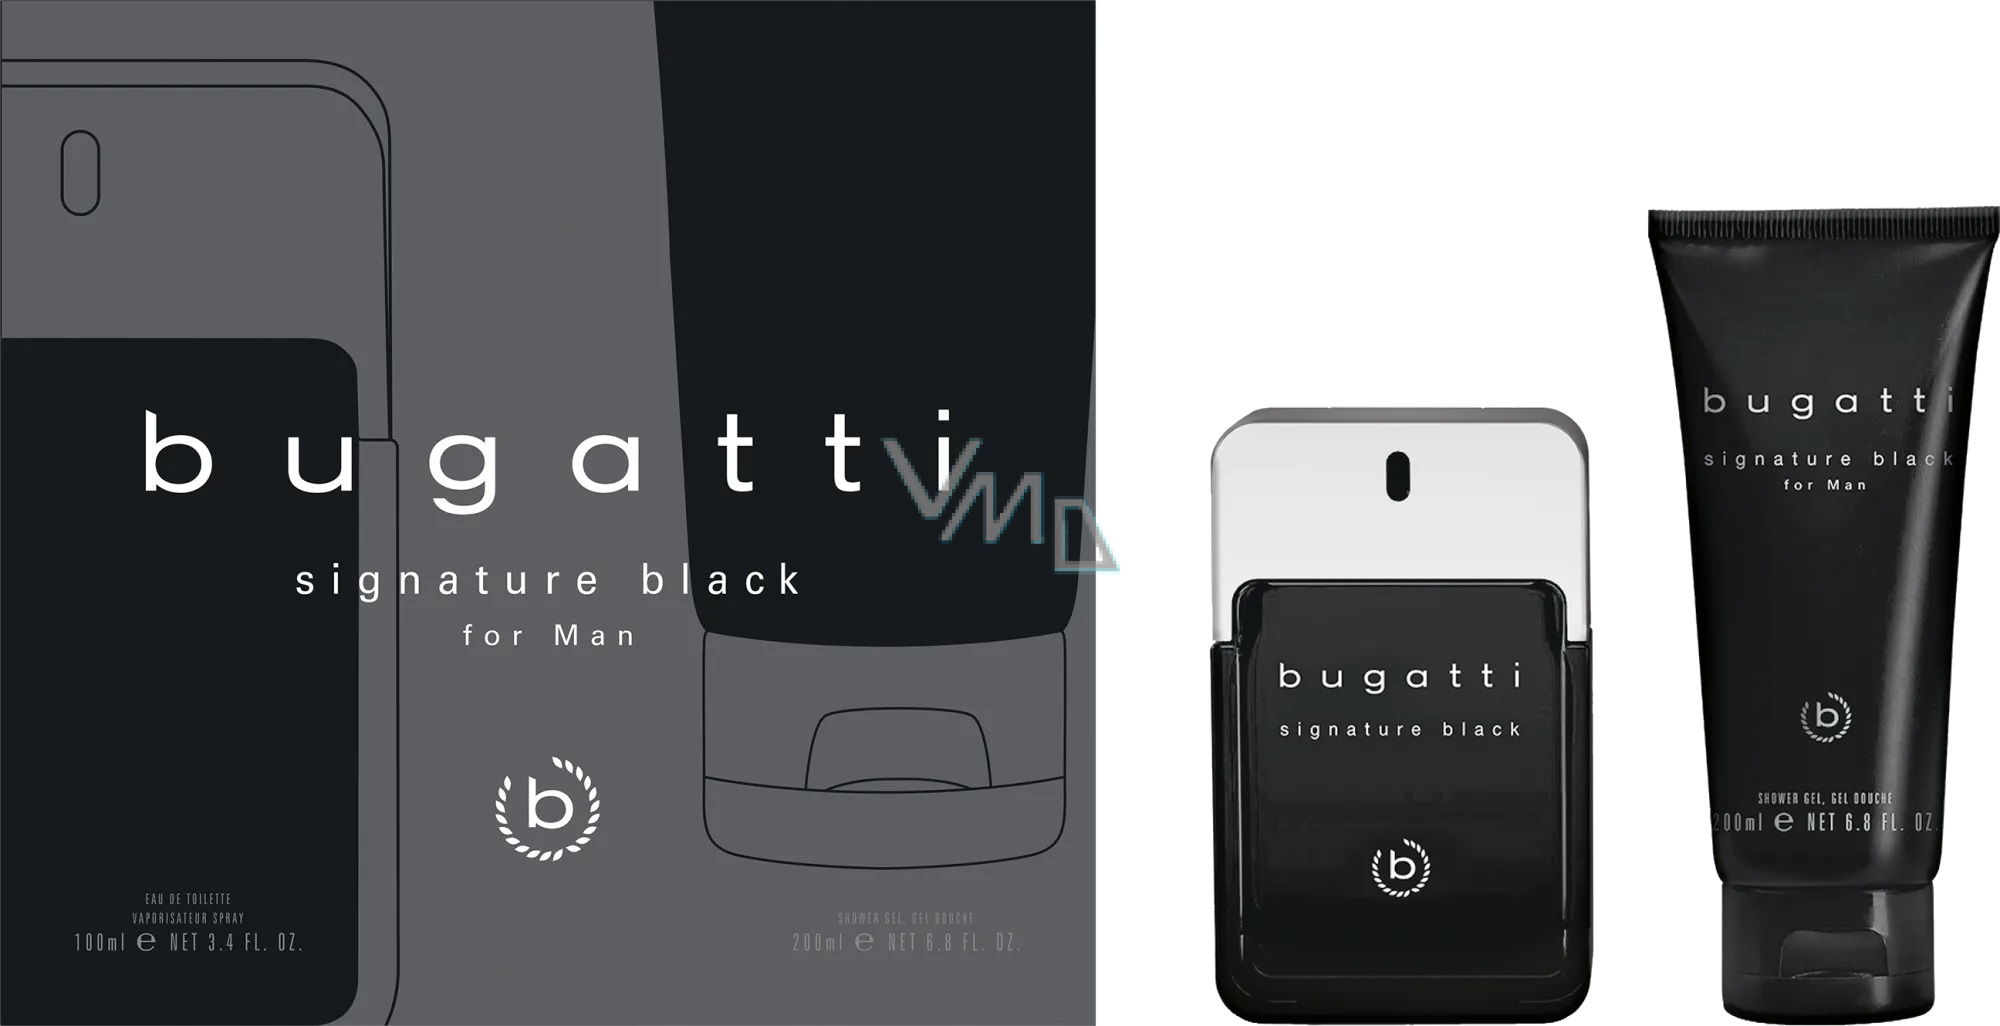 Bugatti Signature Black eau de toilette 100 ml + shower gel 200 ml, gift  set for men - VMD parfumerie - drogerie